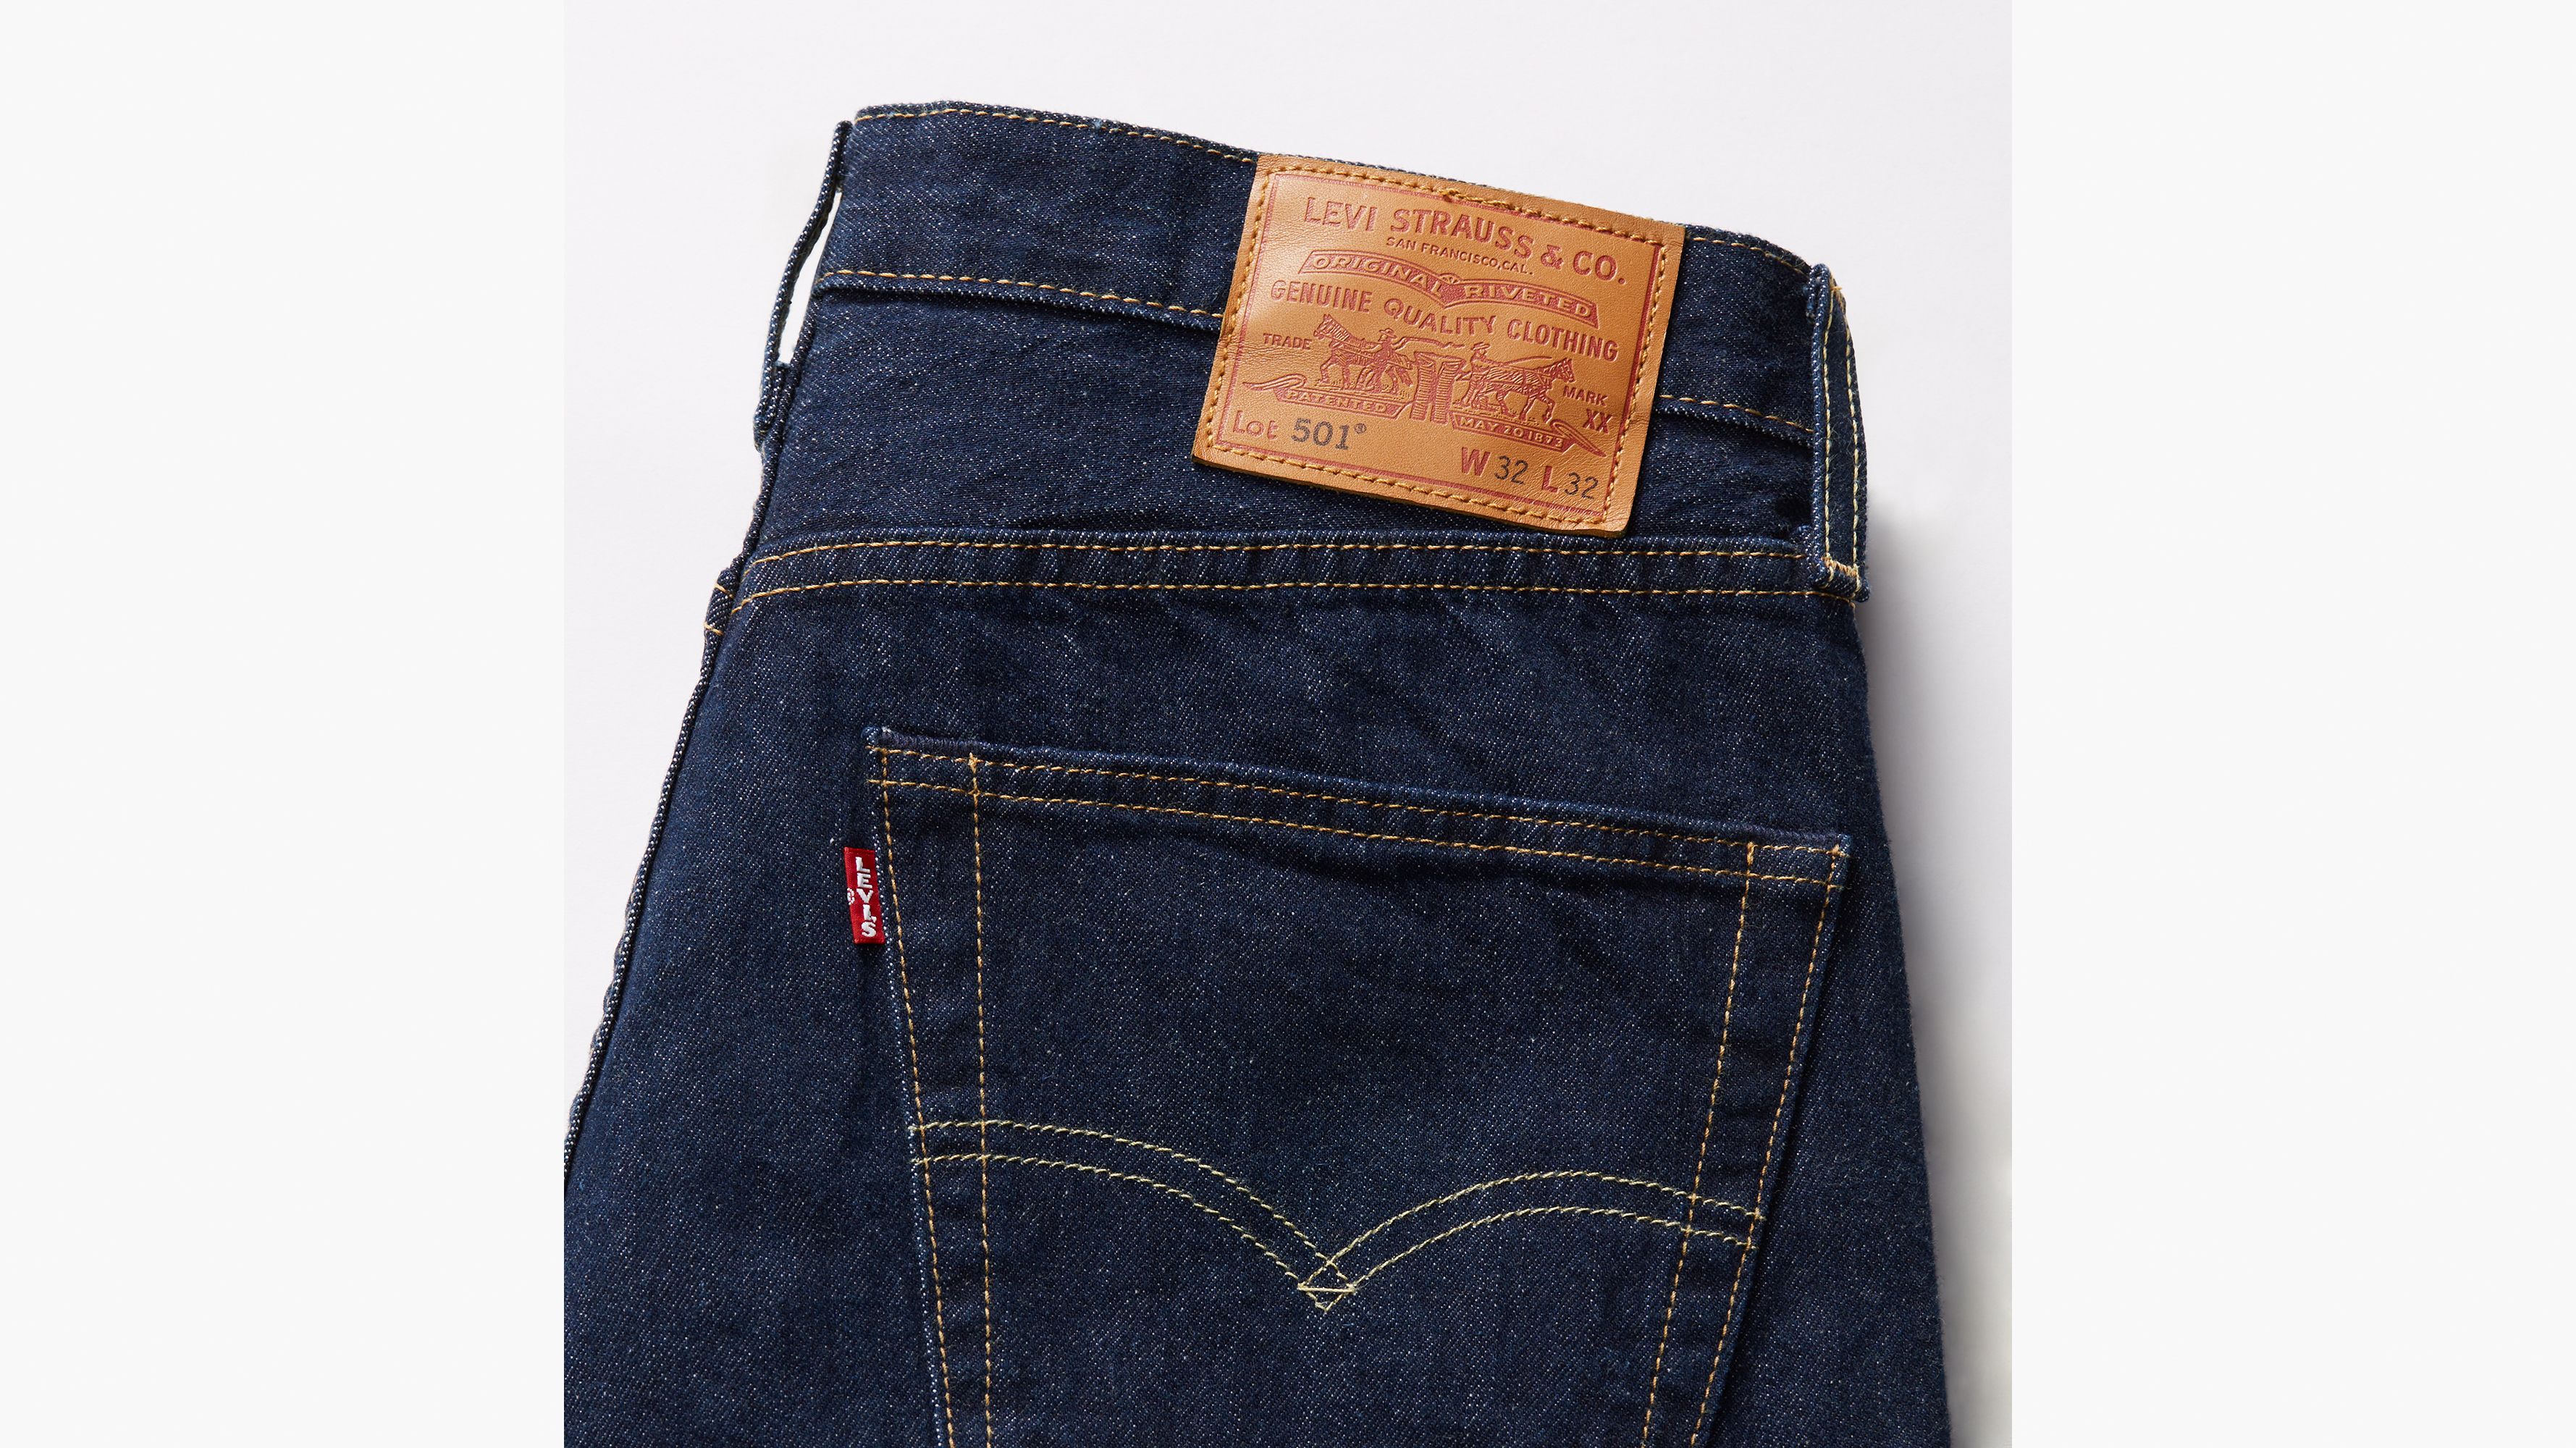 Calça Jeans Levis 501 Original Tradicional Masc. 100% ALG.